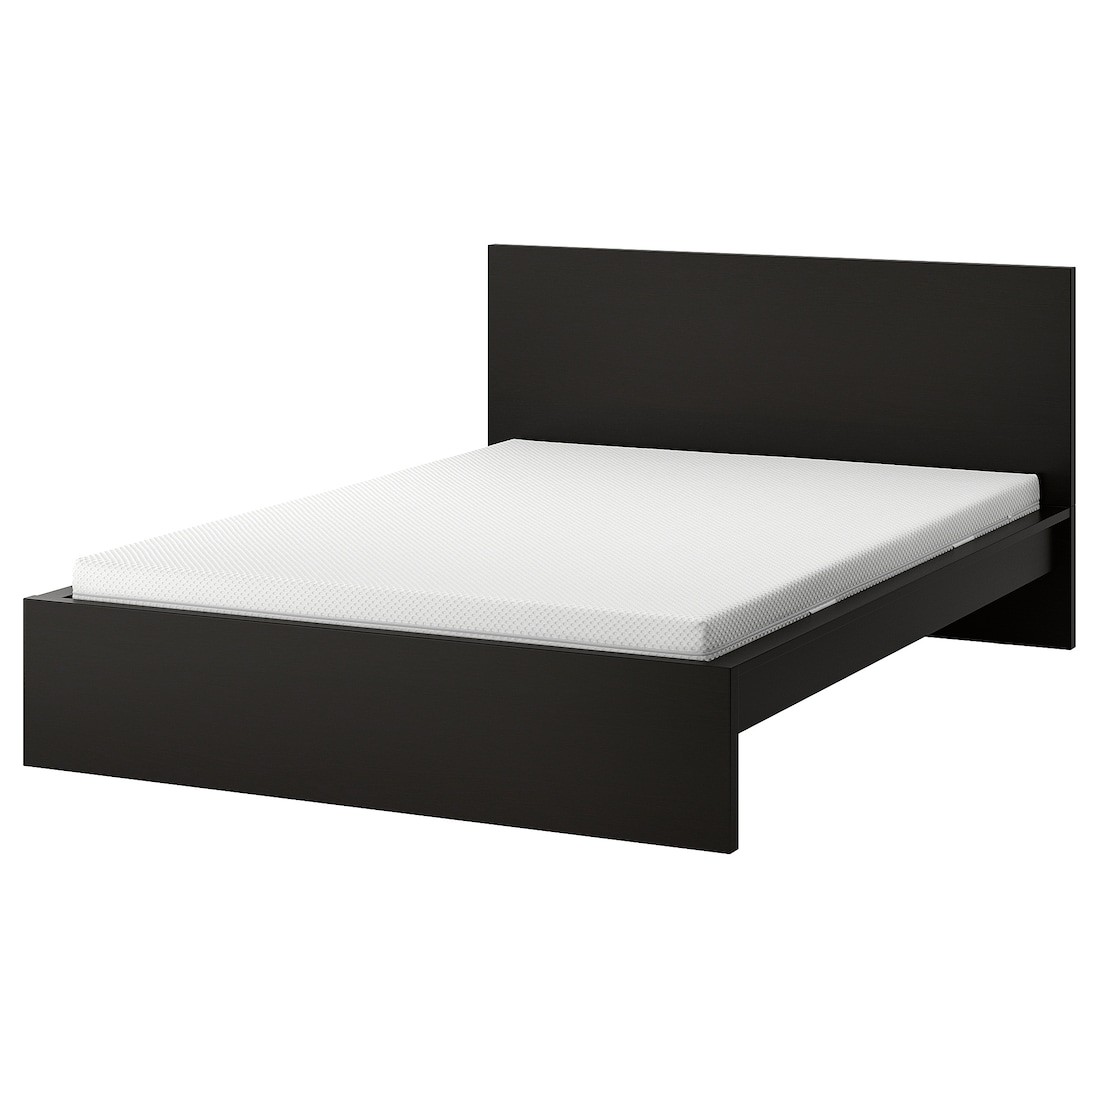 MALM Кровать с матрасом, черно-коричневый / Åbygda твердый, 140x200 см